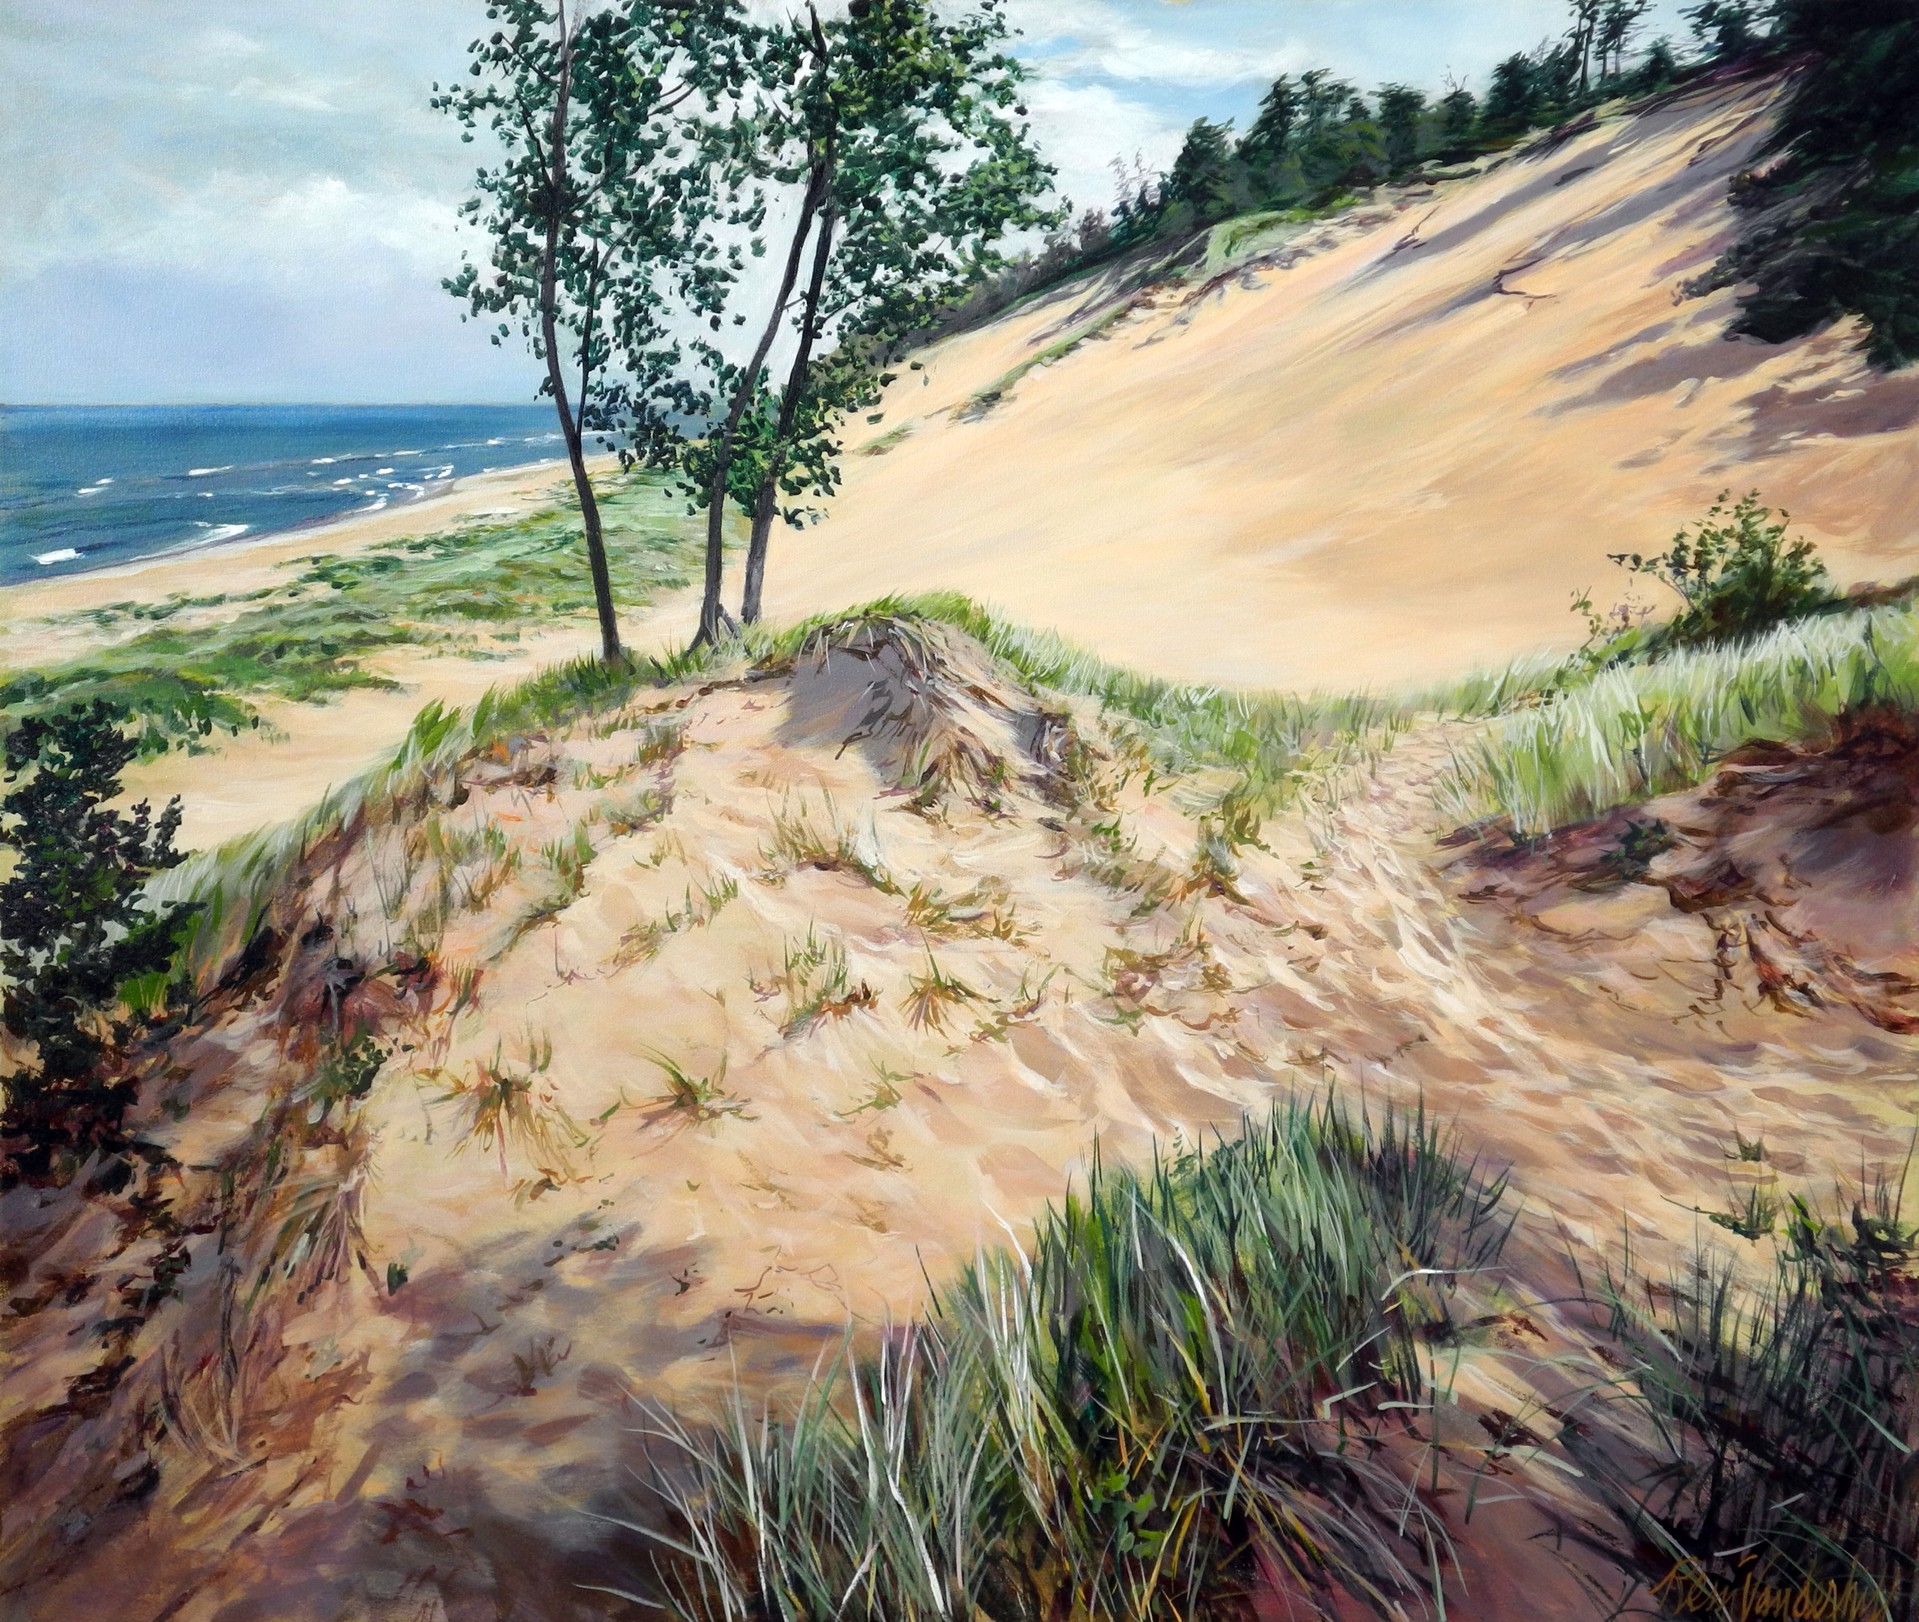 Dune Overlook in Soft Light by Rein Vanderhill